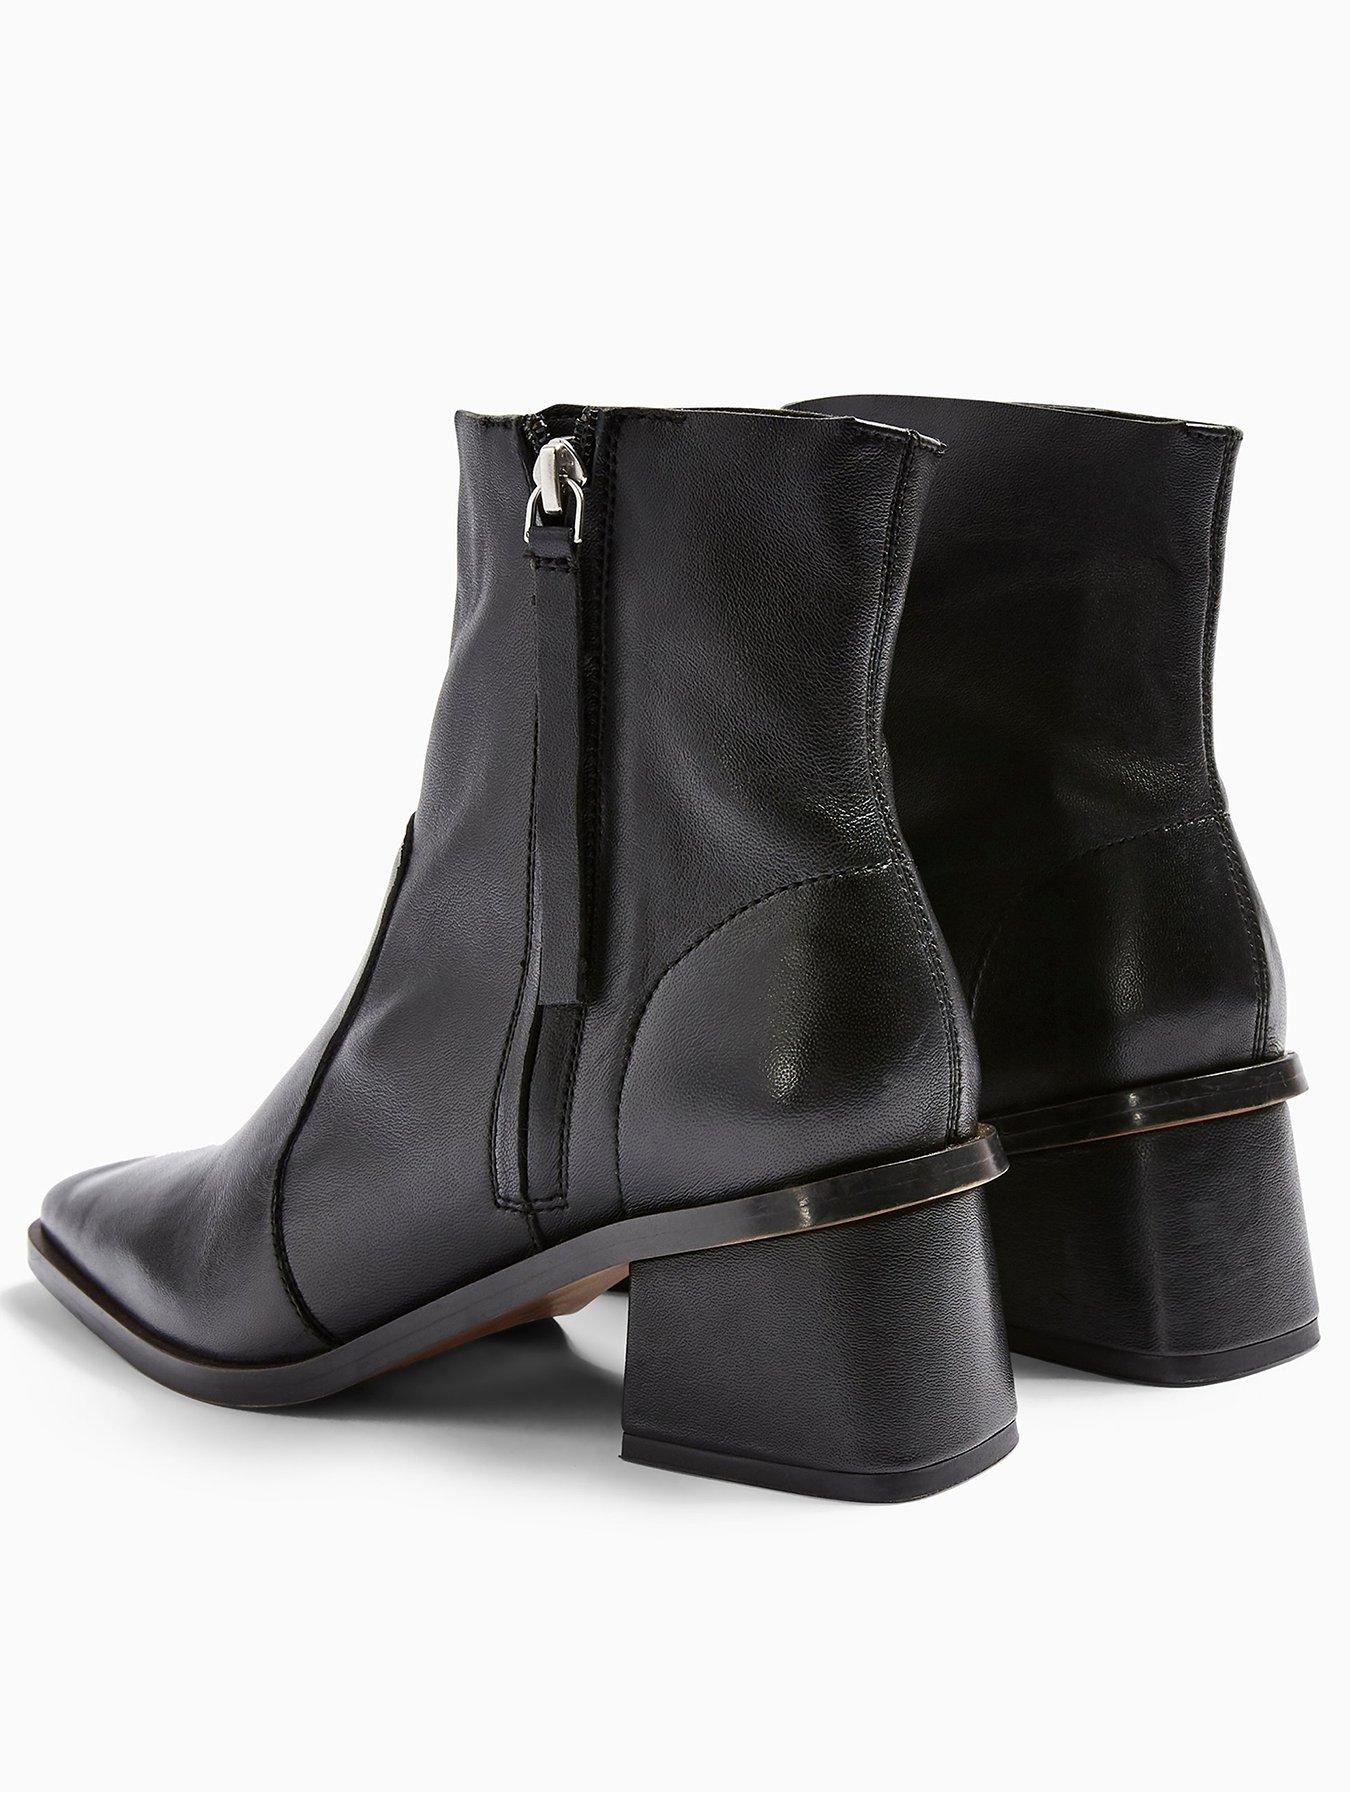 topshop black boots sale